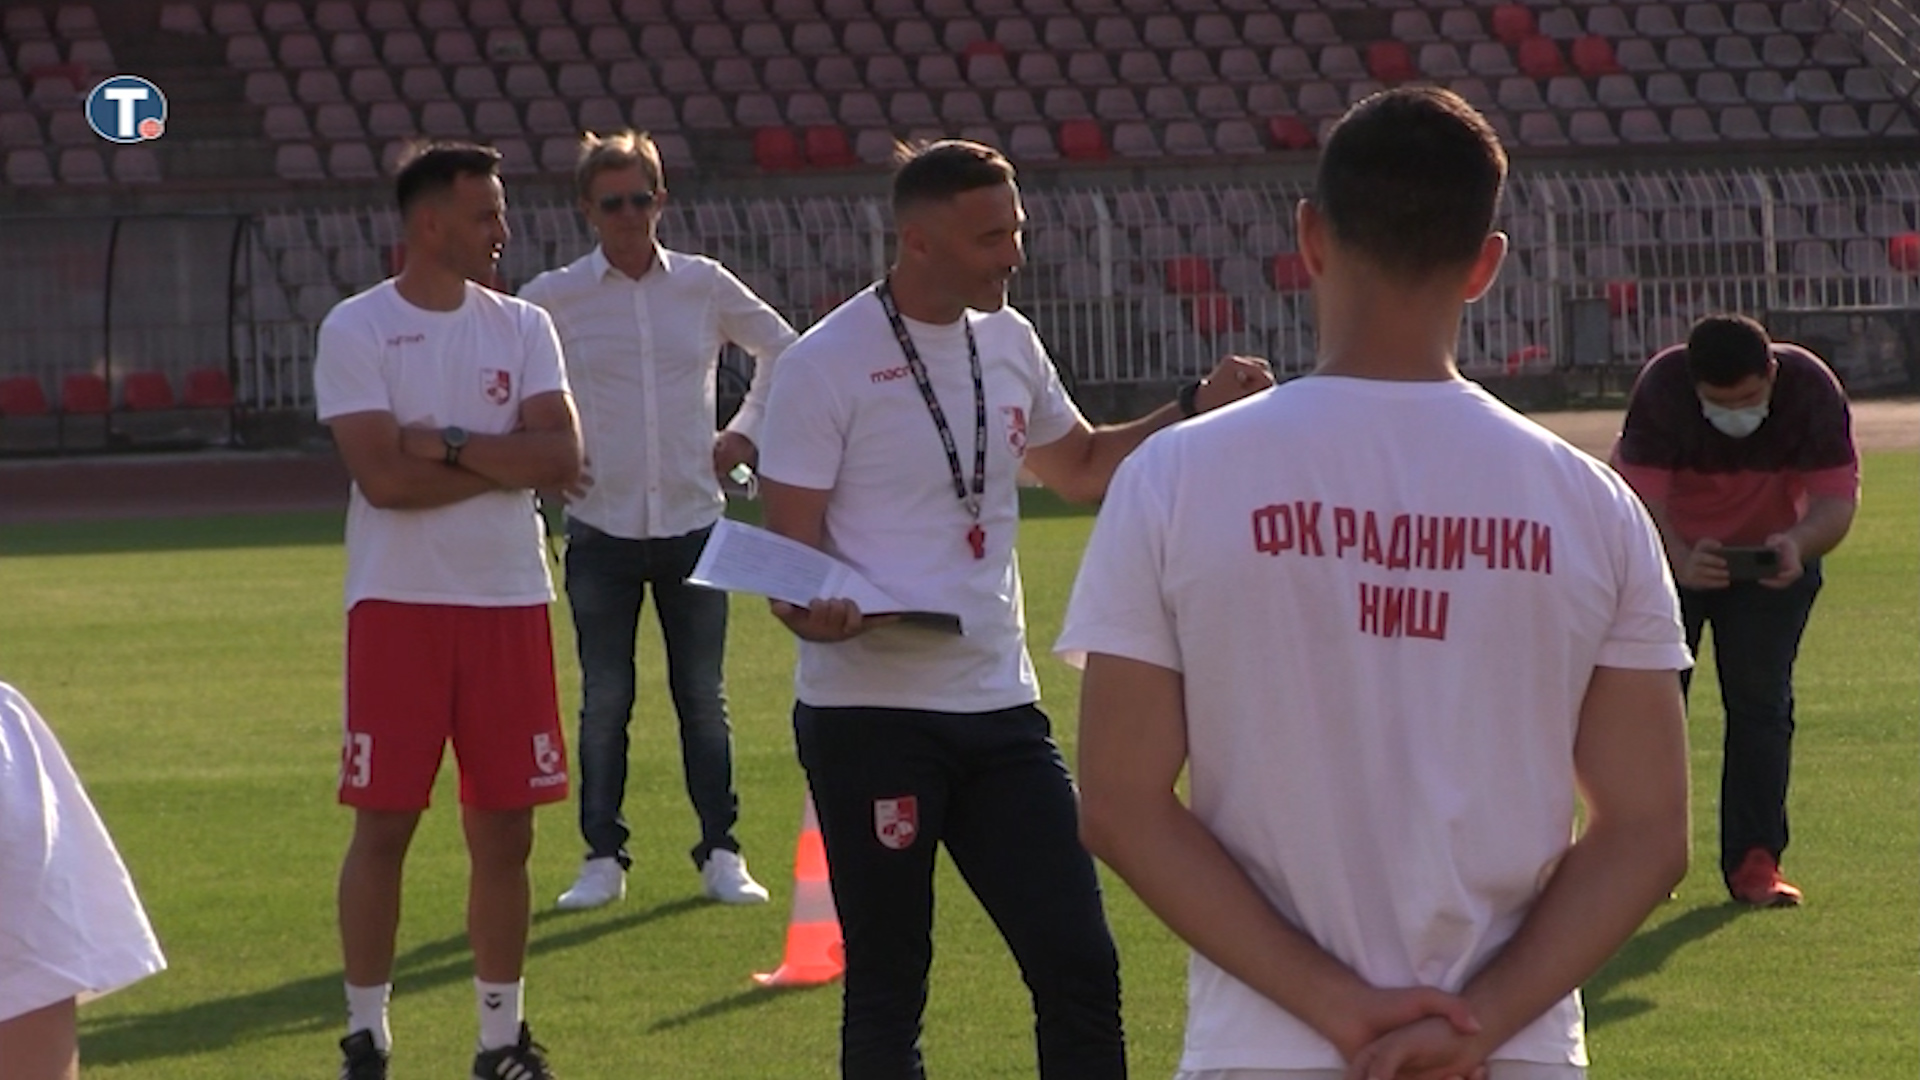 Filip Marković pojačao FK Radnički Niš